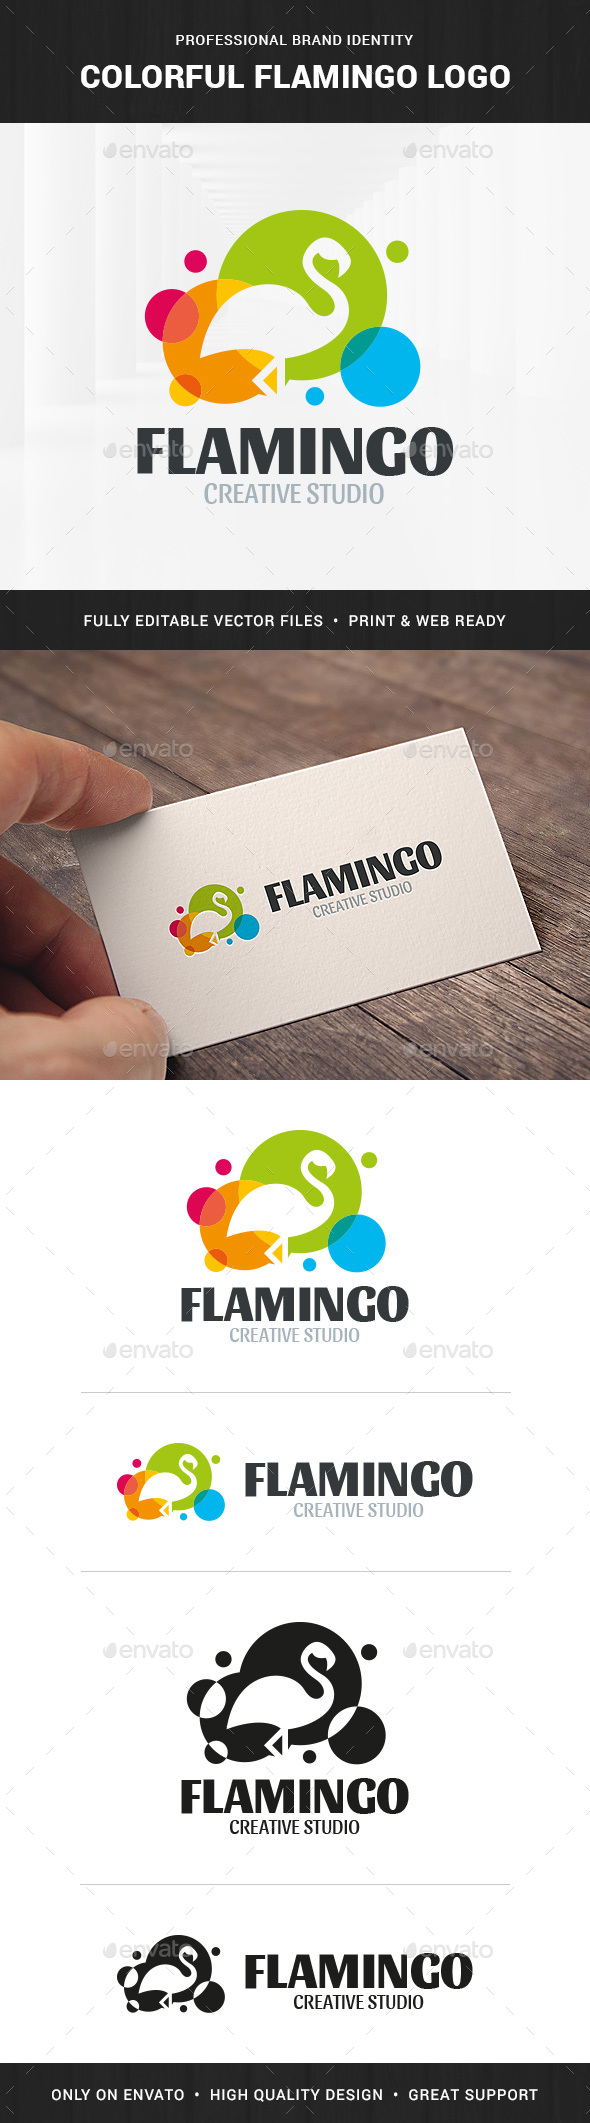 Colorful Flamingo Logo Template